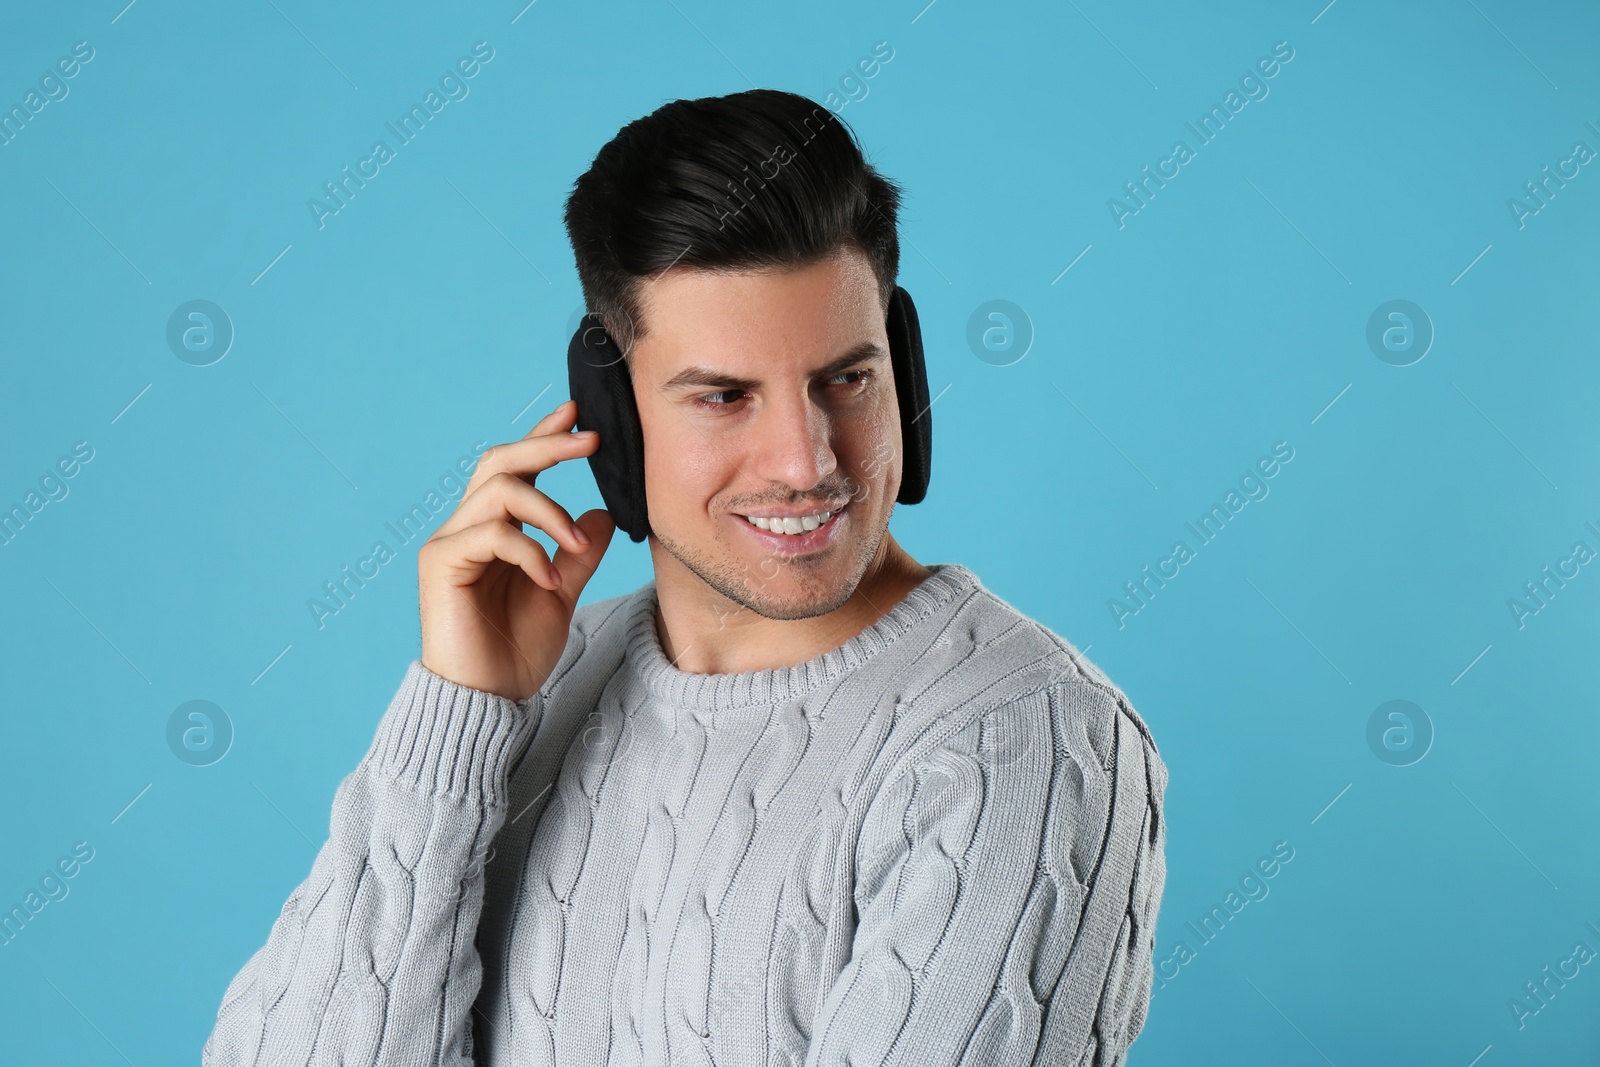 Photo of Man wearing stylish earmuffs on light blue background